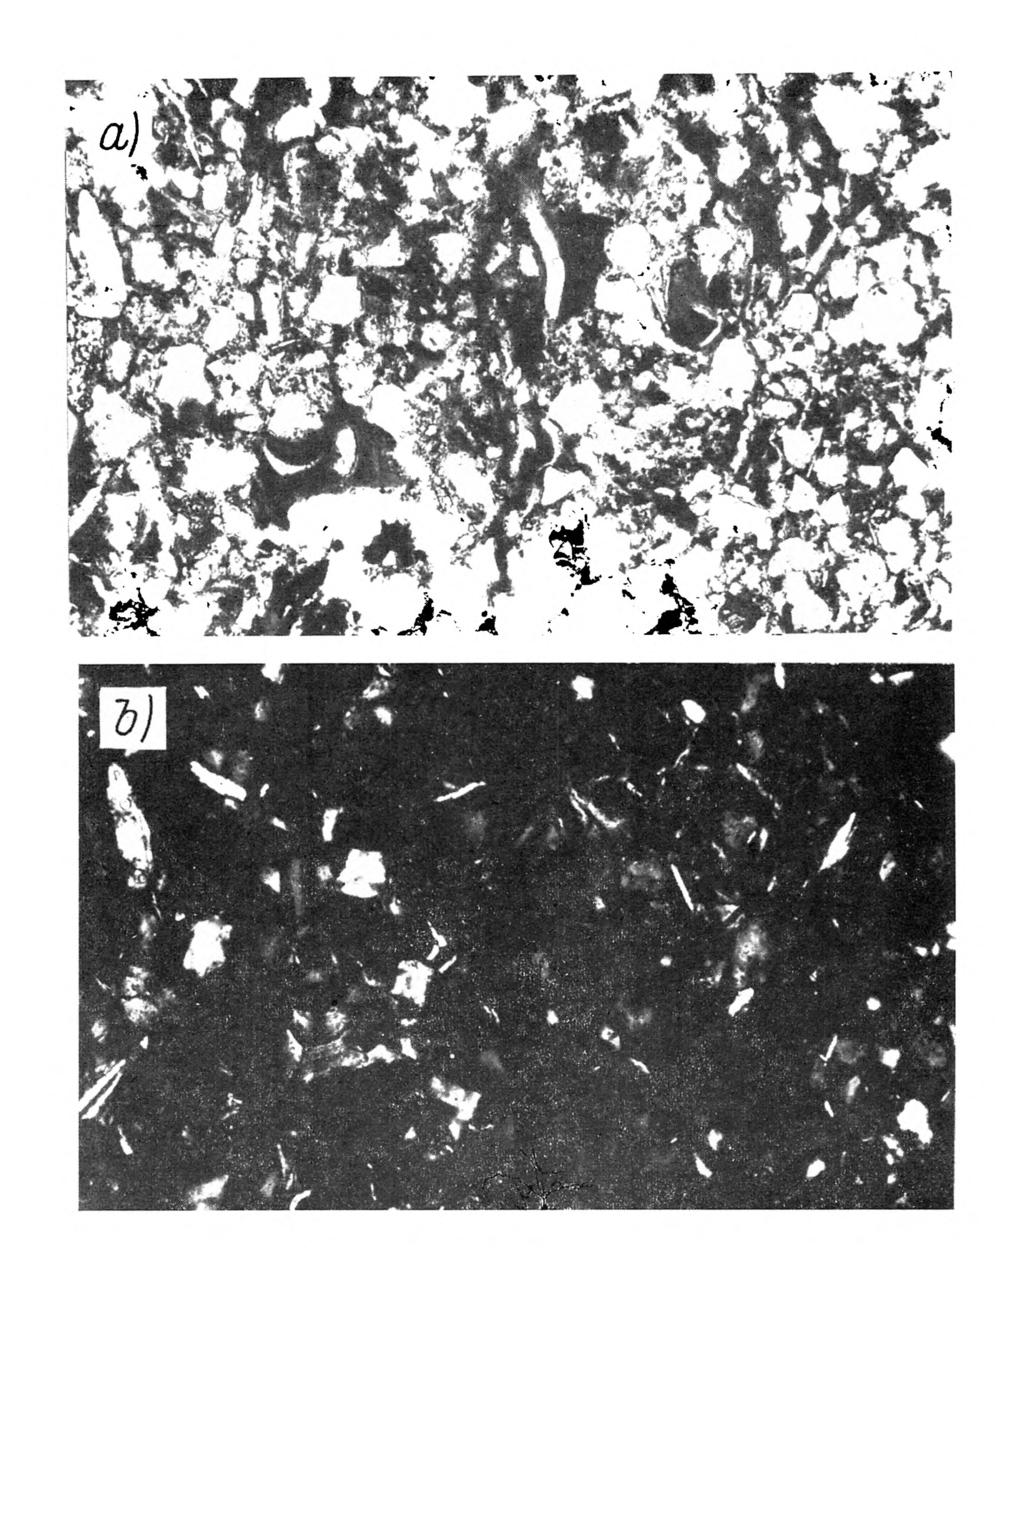 Rys. 8. M ikrom orfologia gleby bielicow ej wytworzonej z utworu pyłow ego ilastego. Poziom B/,, głębokość próbki 45-50 cm. A rgilla-skel-vosepic.